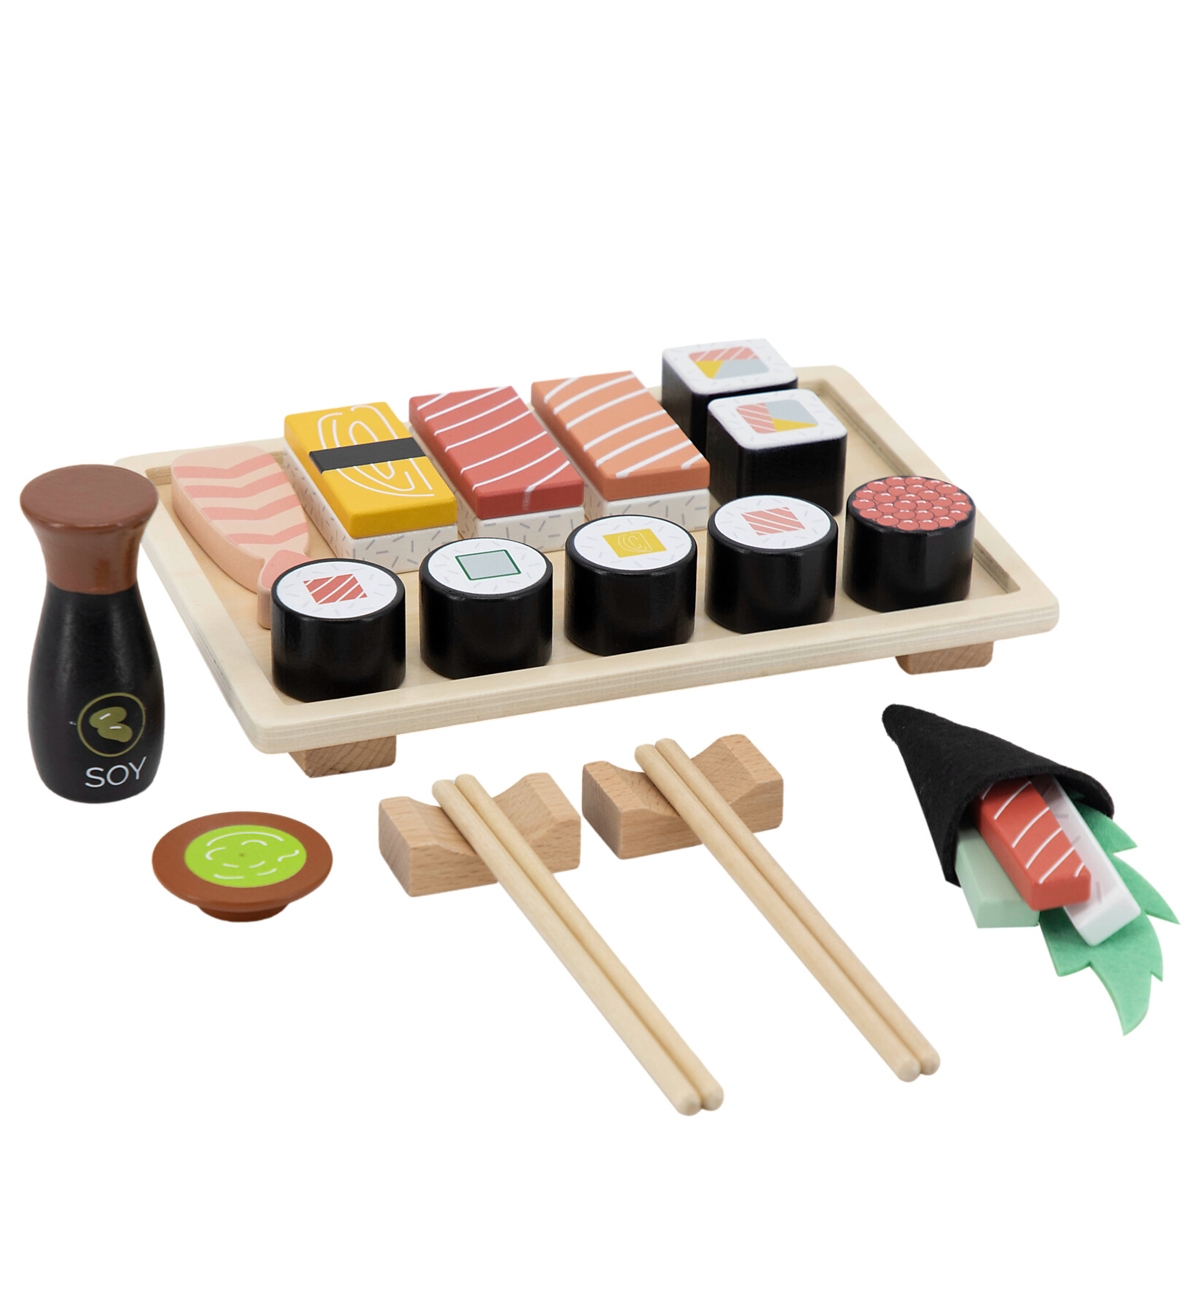 Gioco Set sushi in legno - Tryco - Prezzo: 22,95€ - Codice articolo:  5TTR353012 - Gioco Negozio Online